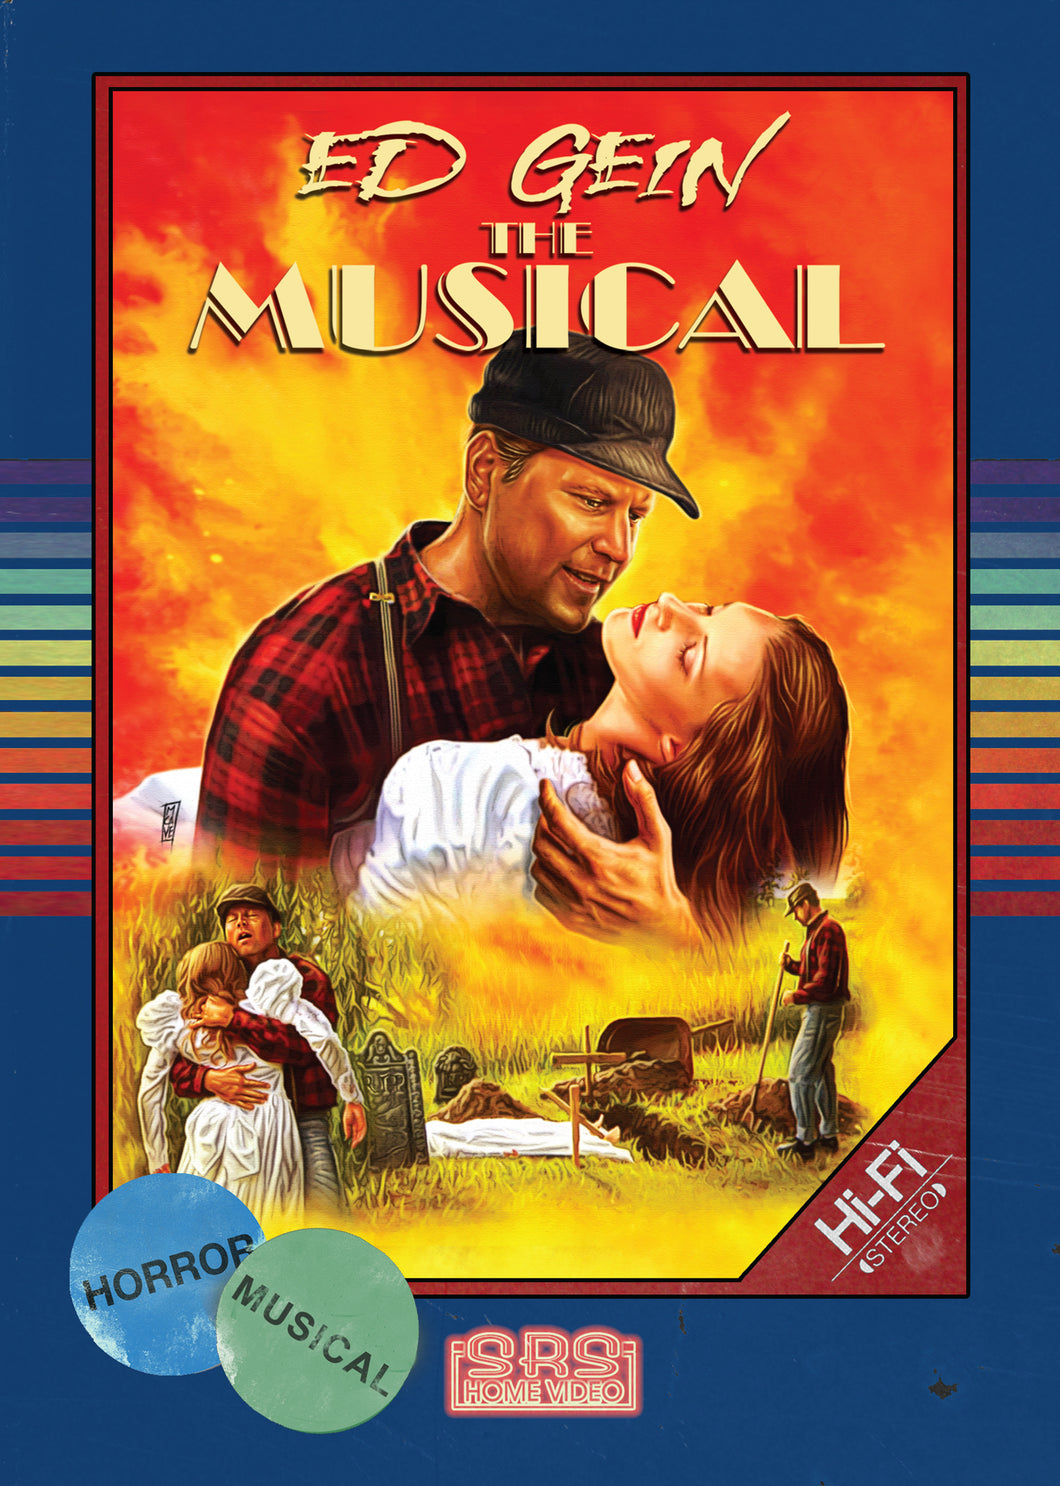 Ed Gein: The Musical Retro DVD